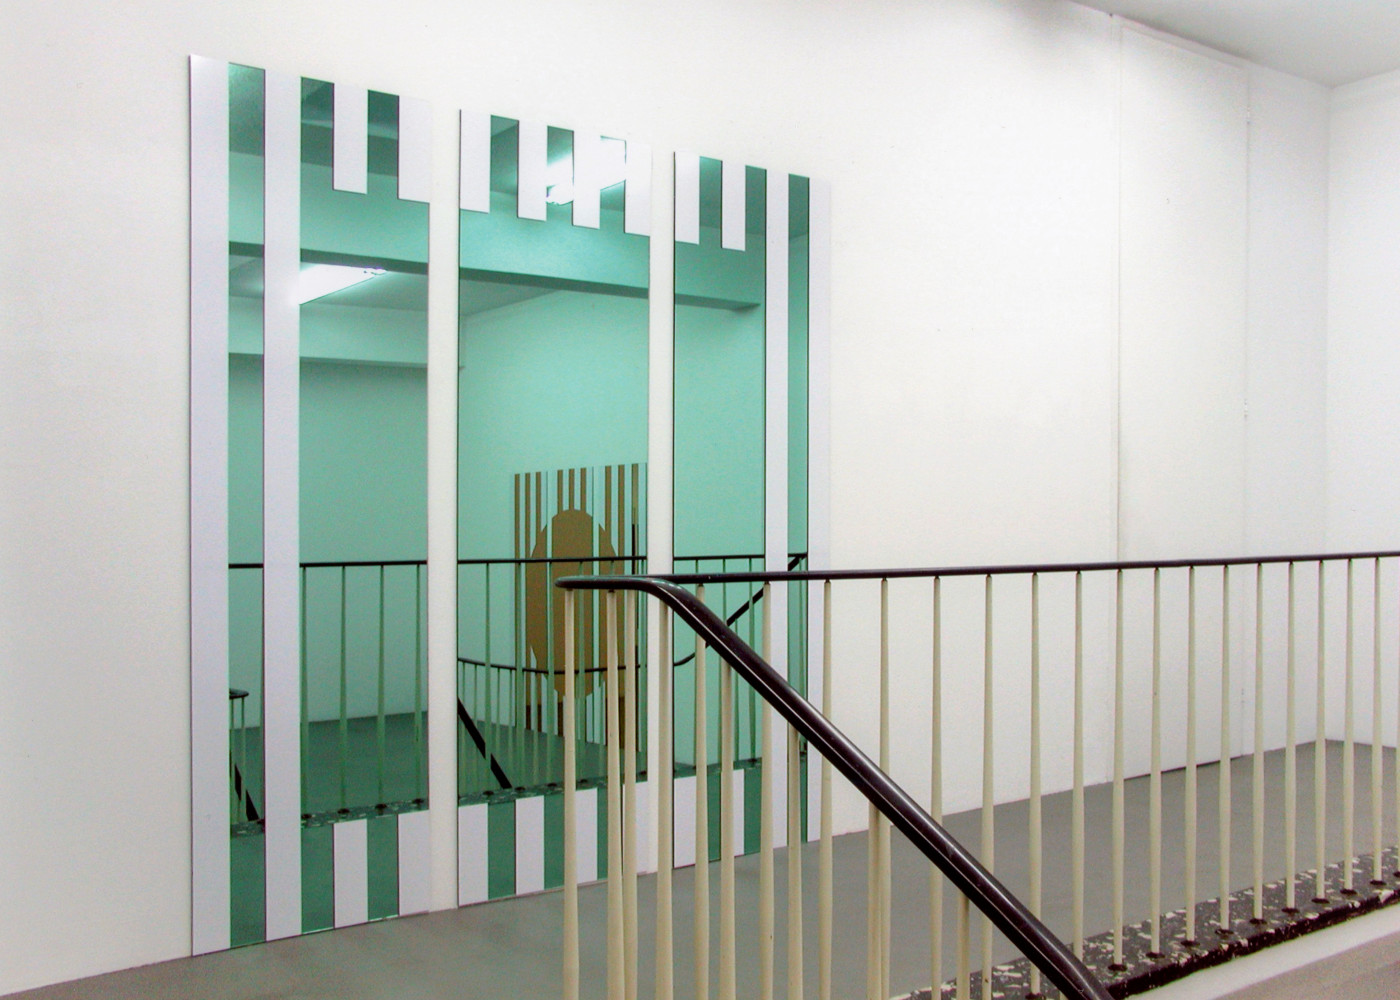 Daniel Buren, ‘Les Visages Colorés ’, Installation view, Buchmann Galerie Köln, 2005